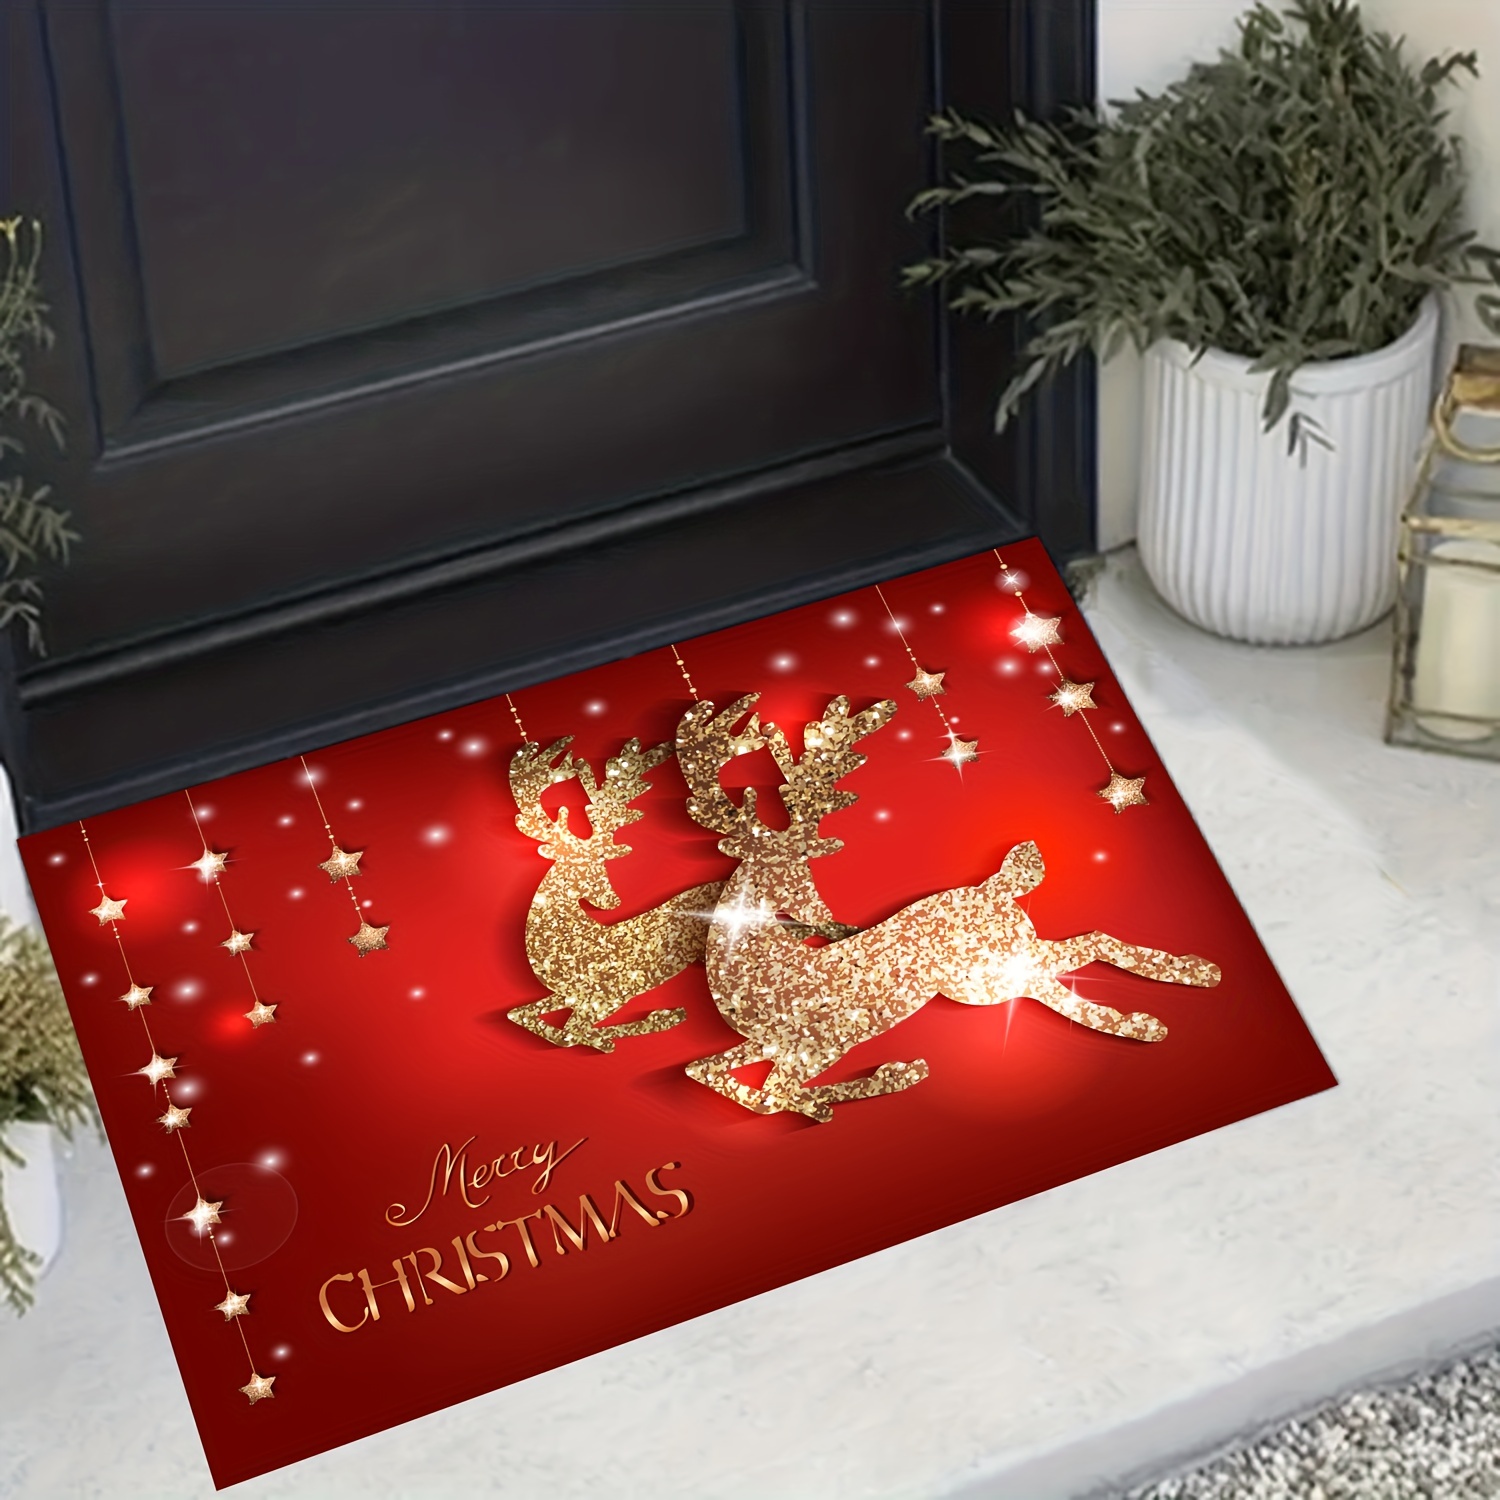 Christmas Doormat Winter Home Door Decorations, Non-slip Welcome Rugs For Front  Door, Funny Mat For Home Kitchen Floor Winter Decor - Temu